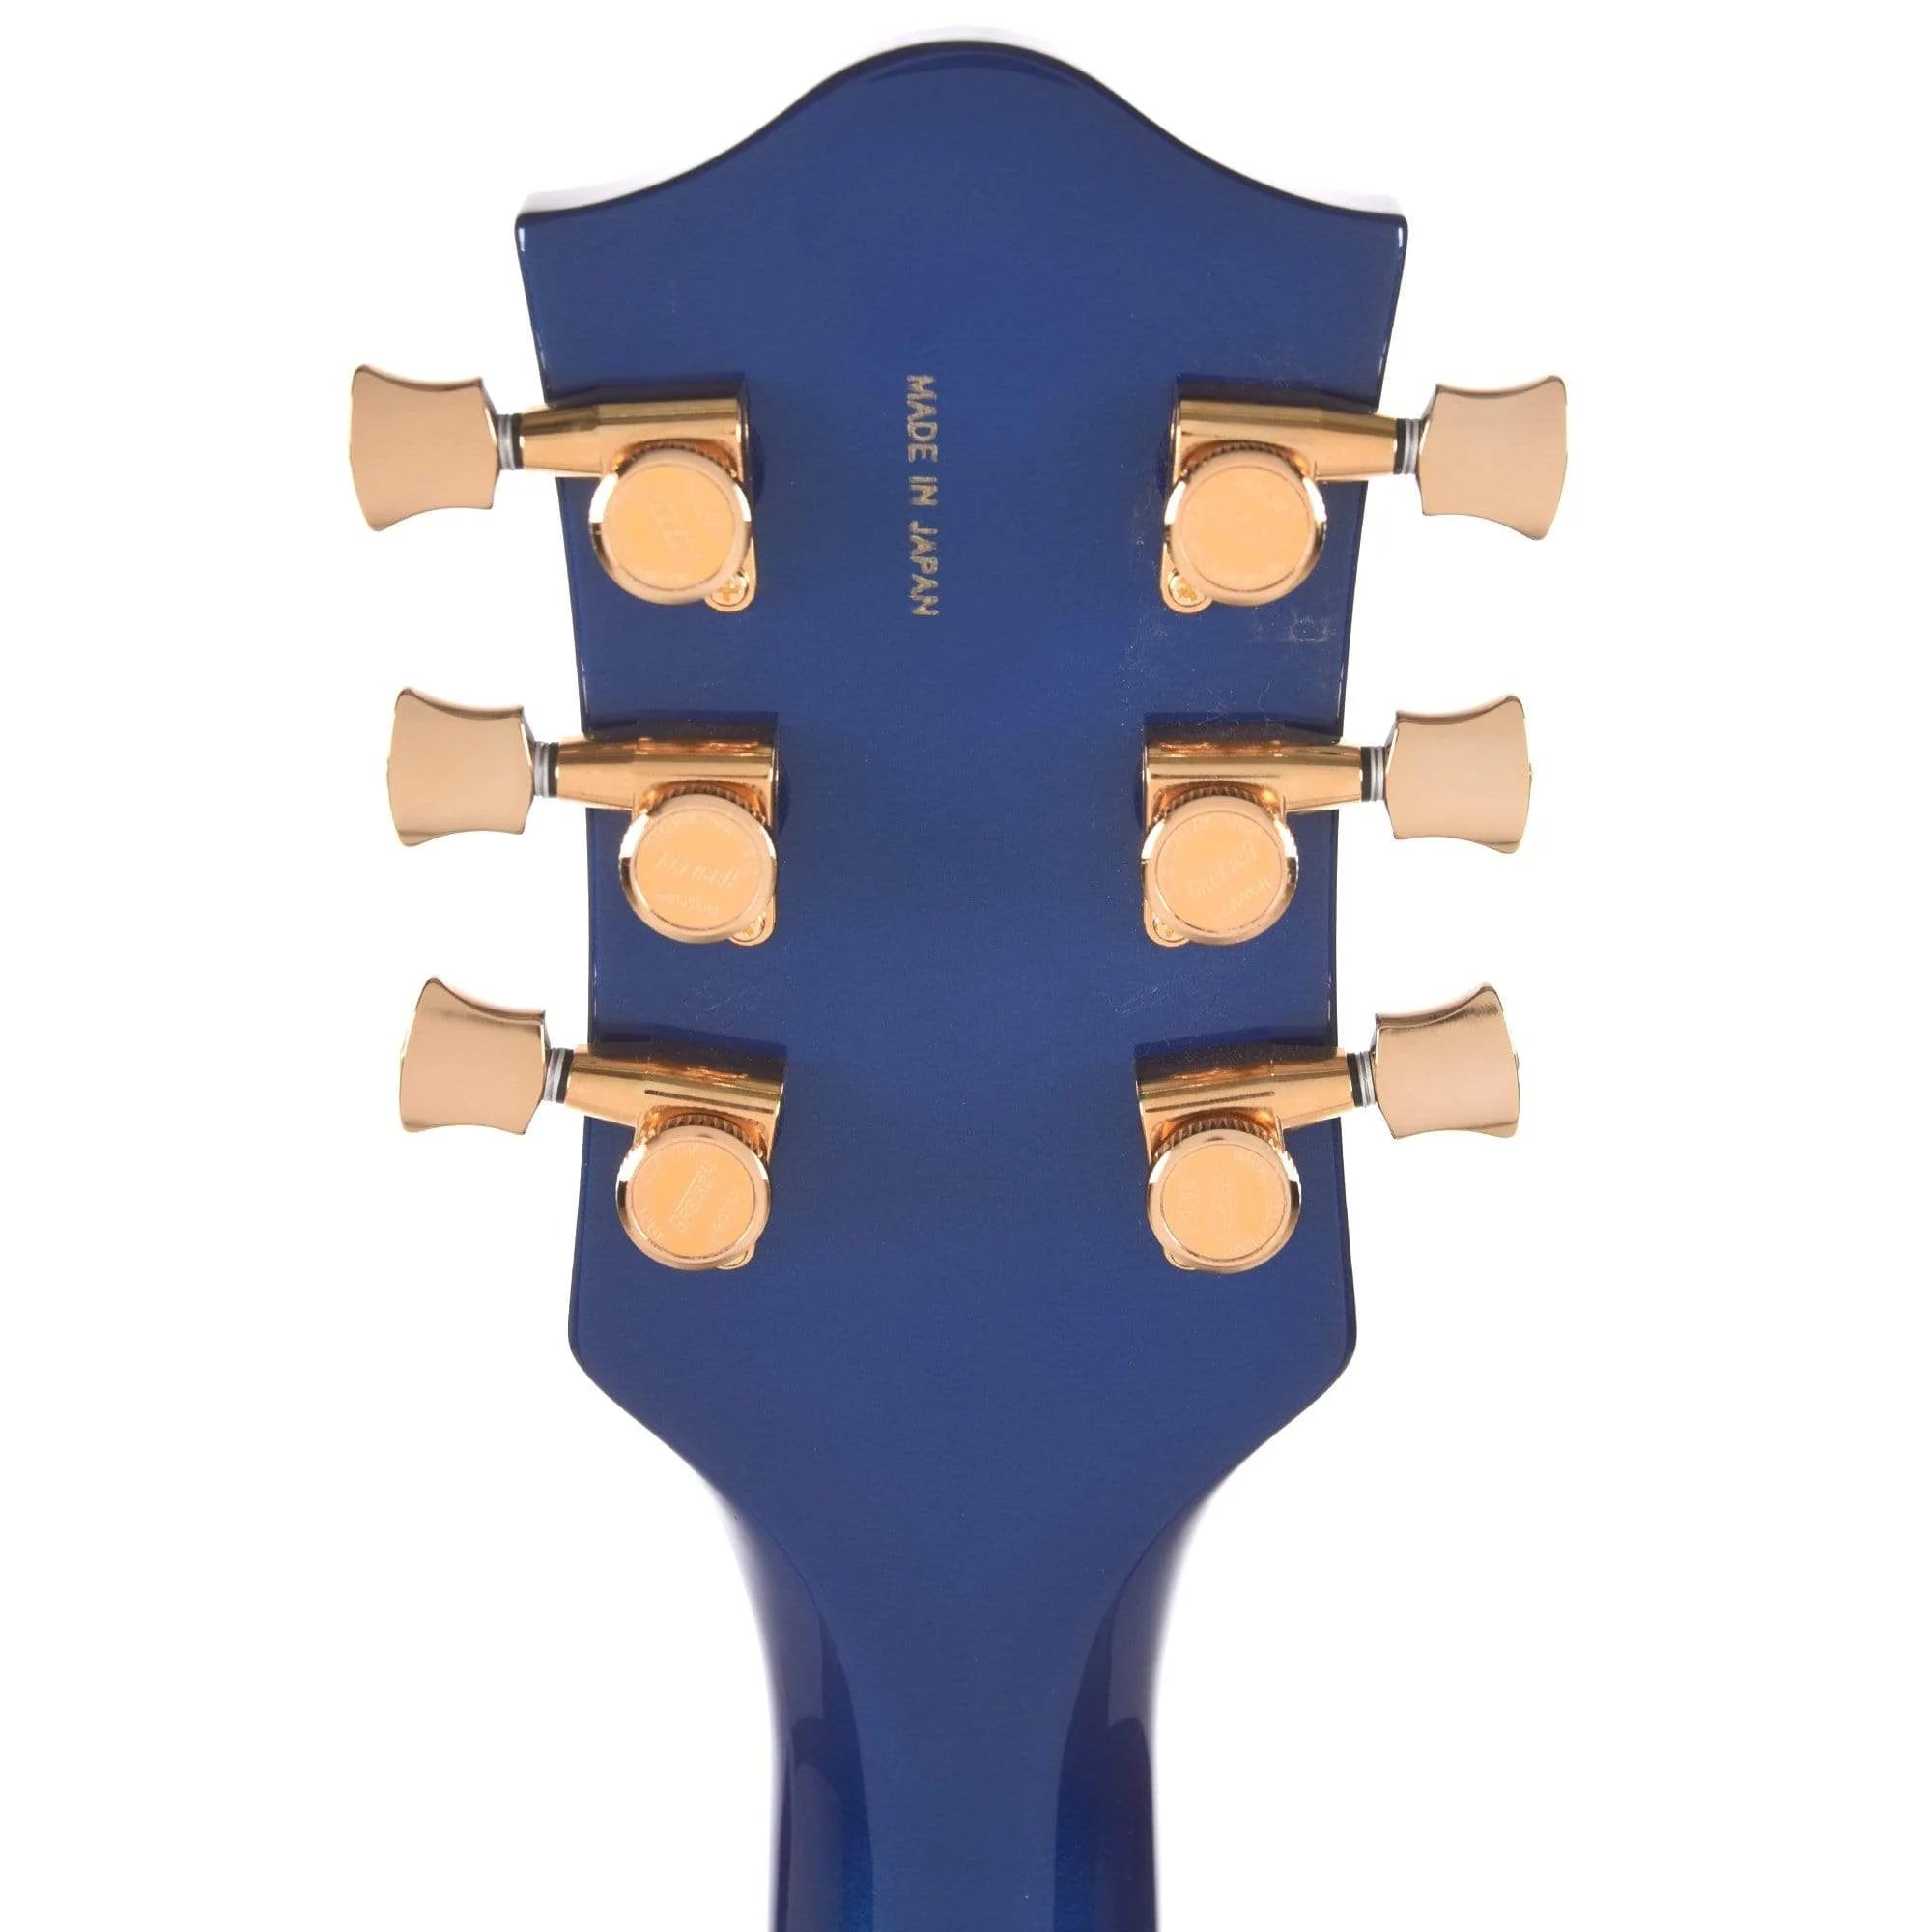 Gretsch G6659TG Players Edition Broadkaster Jr. Center Block Single-Cut Guitar - Azure Metallic